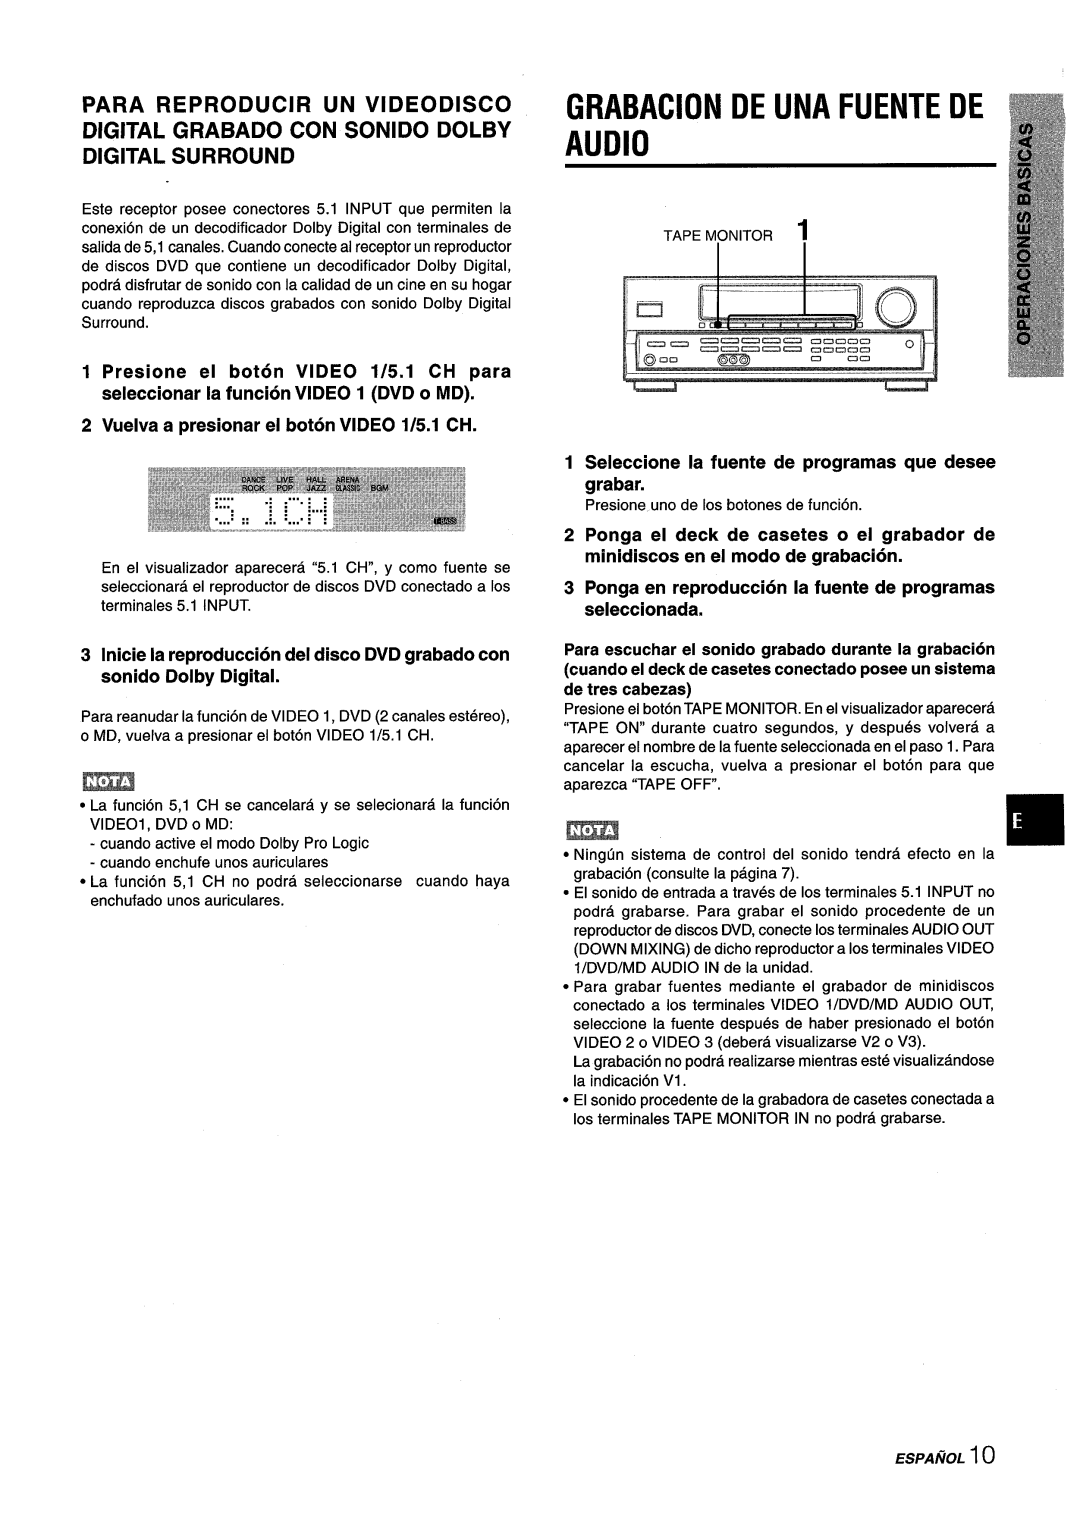 Aiwa AV-D25 manual Grabacion De Una Fuente De Audio, Vuelva a presionar el boton VIDEO 1/5.1 CH 